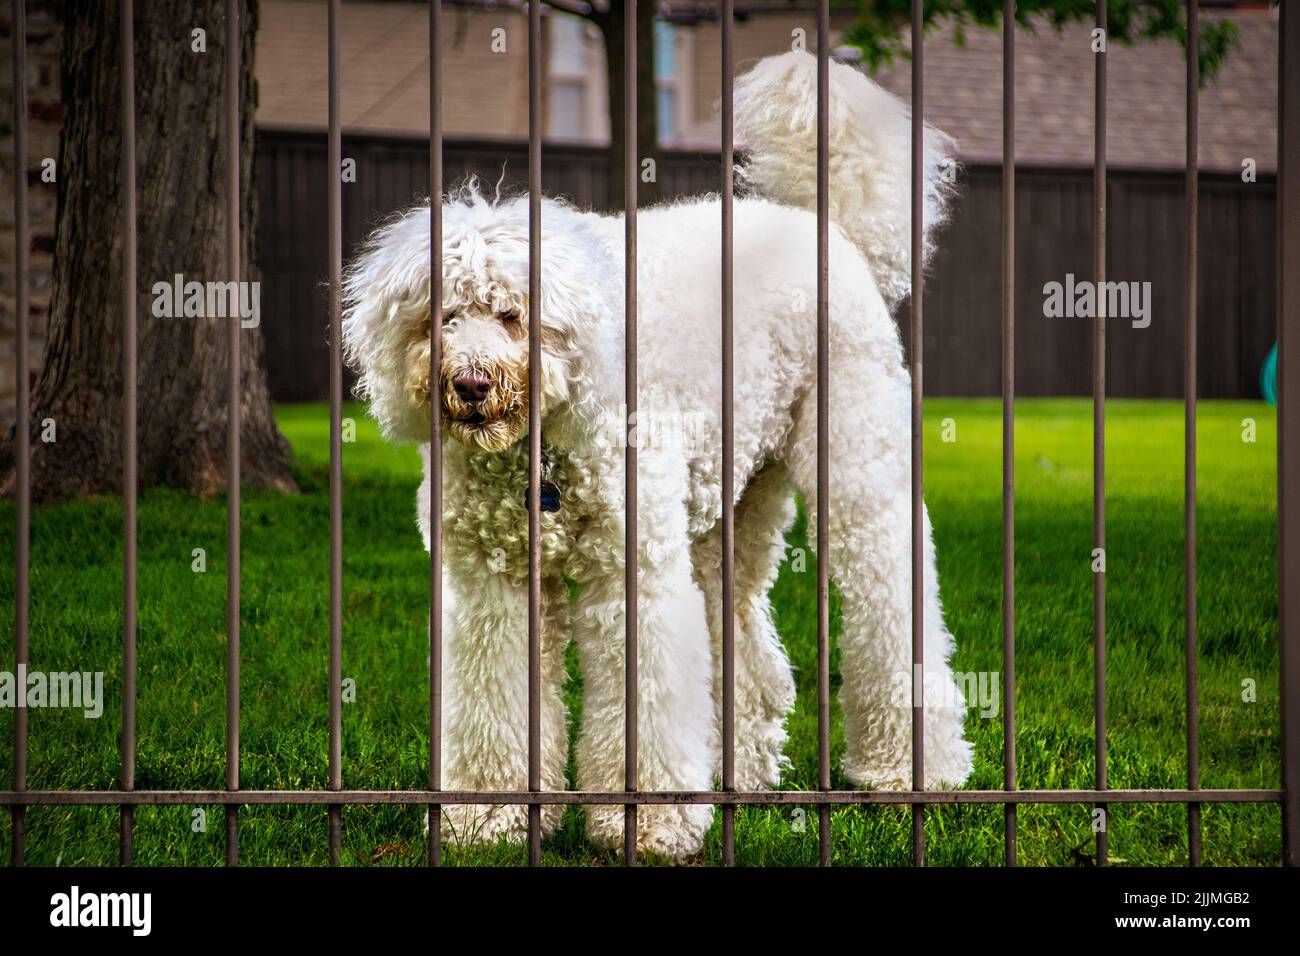 Großer weißer, zotteliger, flauschiger Hund klebt die Nase durch einen Metallzaun mit verschwommenem grünen Gras und Zaun in einer Wohngegend Stockfoto